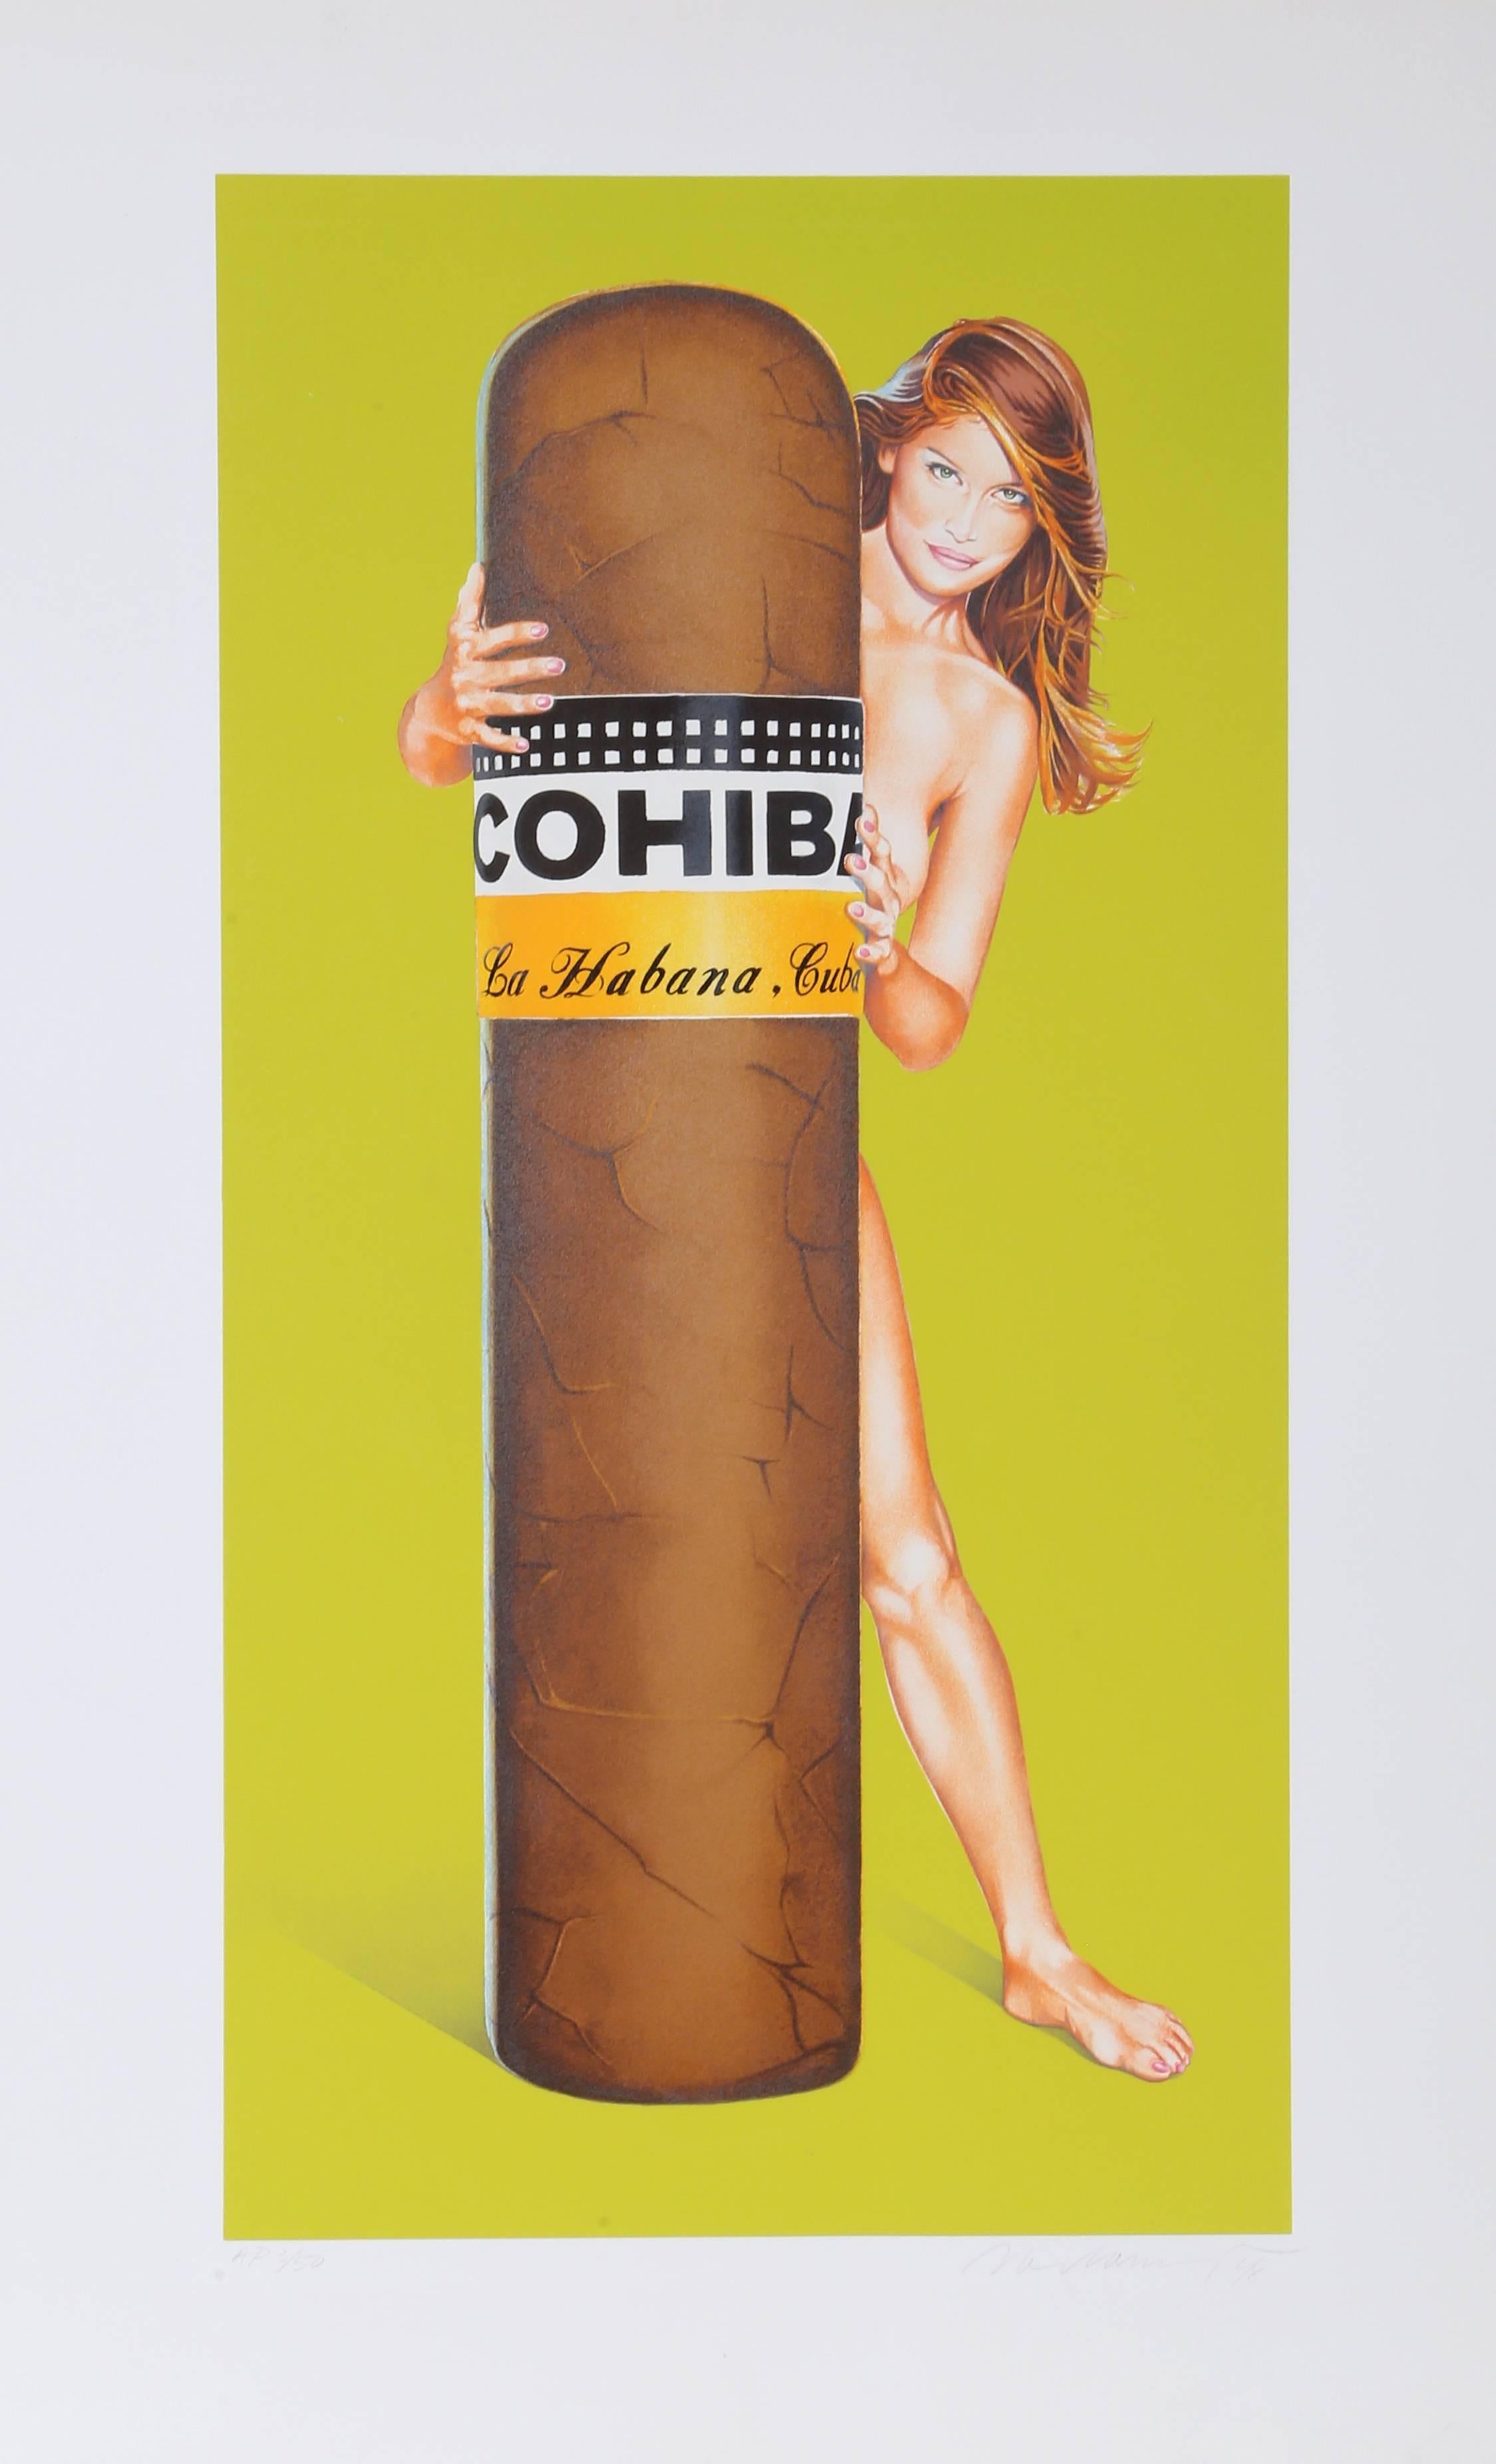 Artistics : Mel Ramos, Américain (1935 - )
Titre : Hav a Havana III
Année : 1998
Médium : Lithographie, signée et numérotée au crayon 
Édition : AP 3/50
Taille de l'image : 25.75 x 13.25 pouces
Taille : 31.5 in. x 19.5 inches